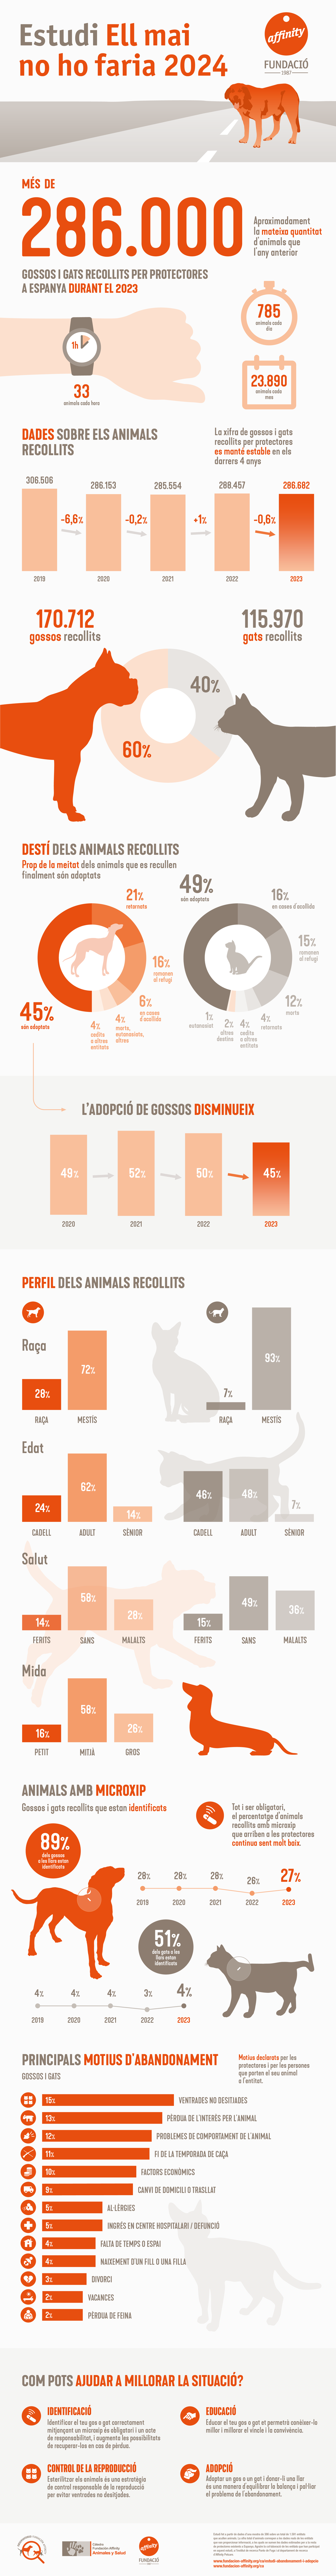 Infografia Estudi sobre l’abandonament i l’adopció d'animals de companyia a Espanya de l'any 2024